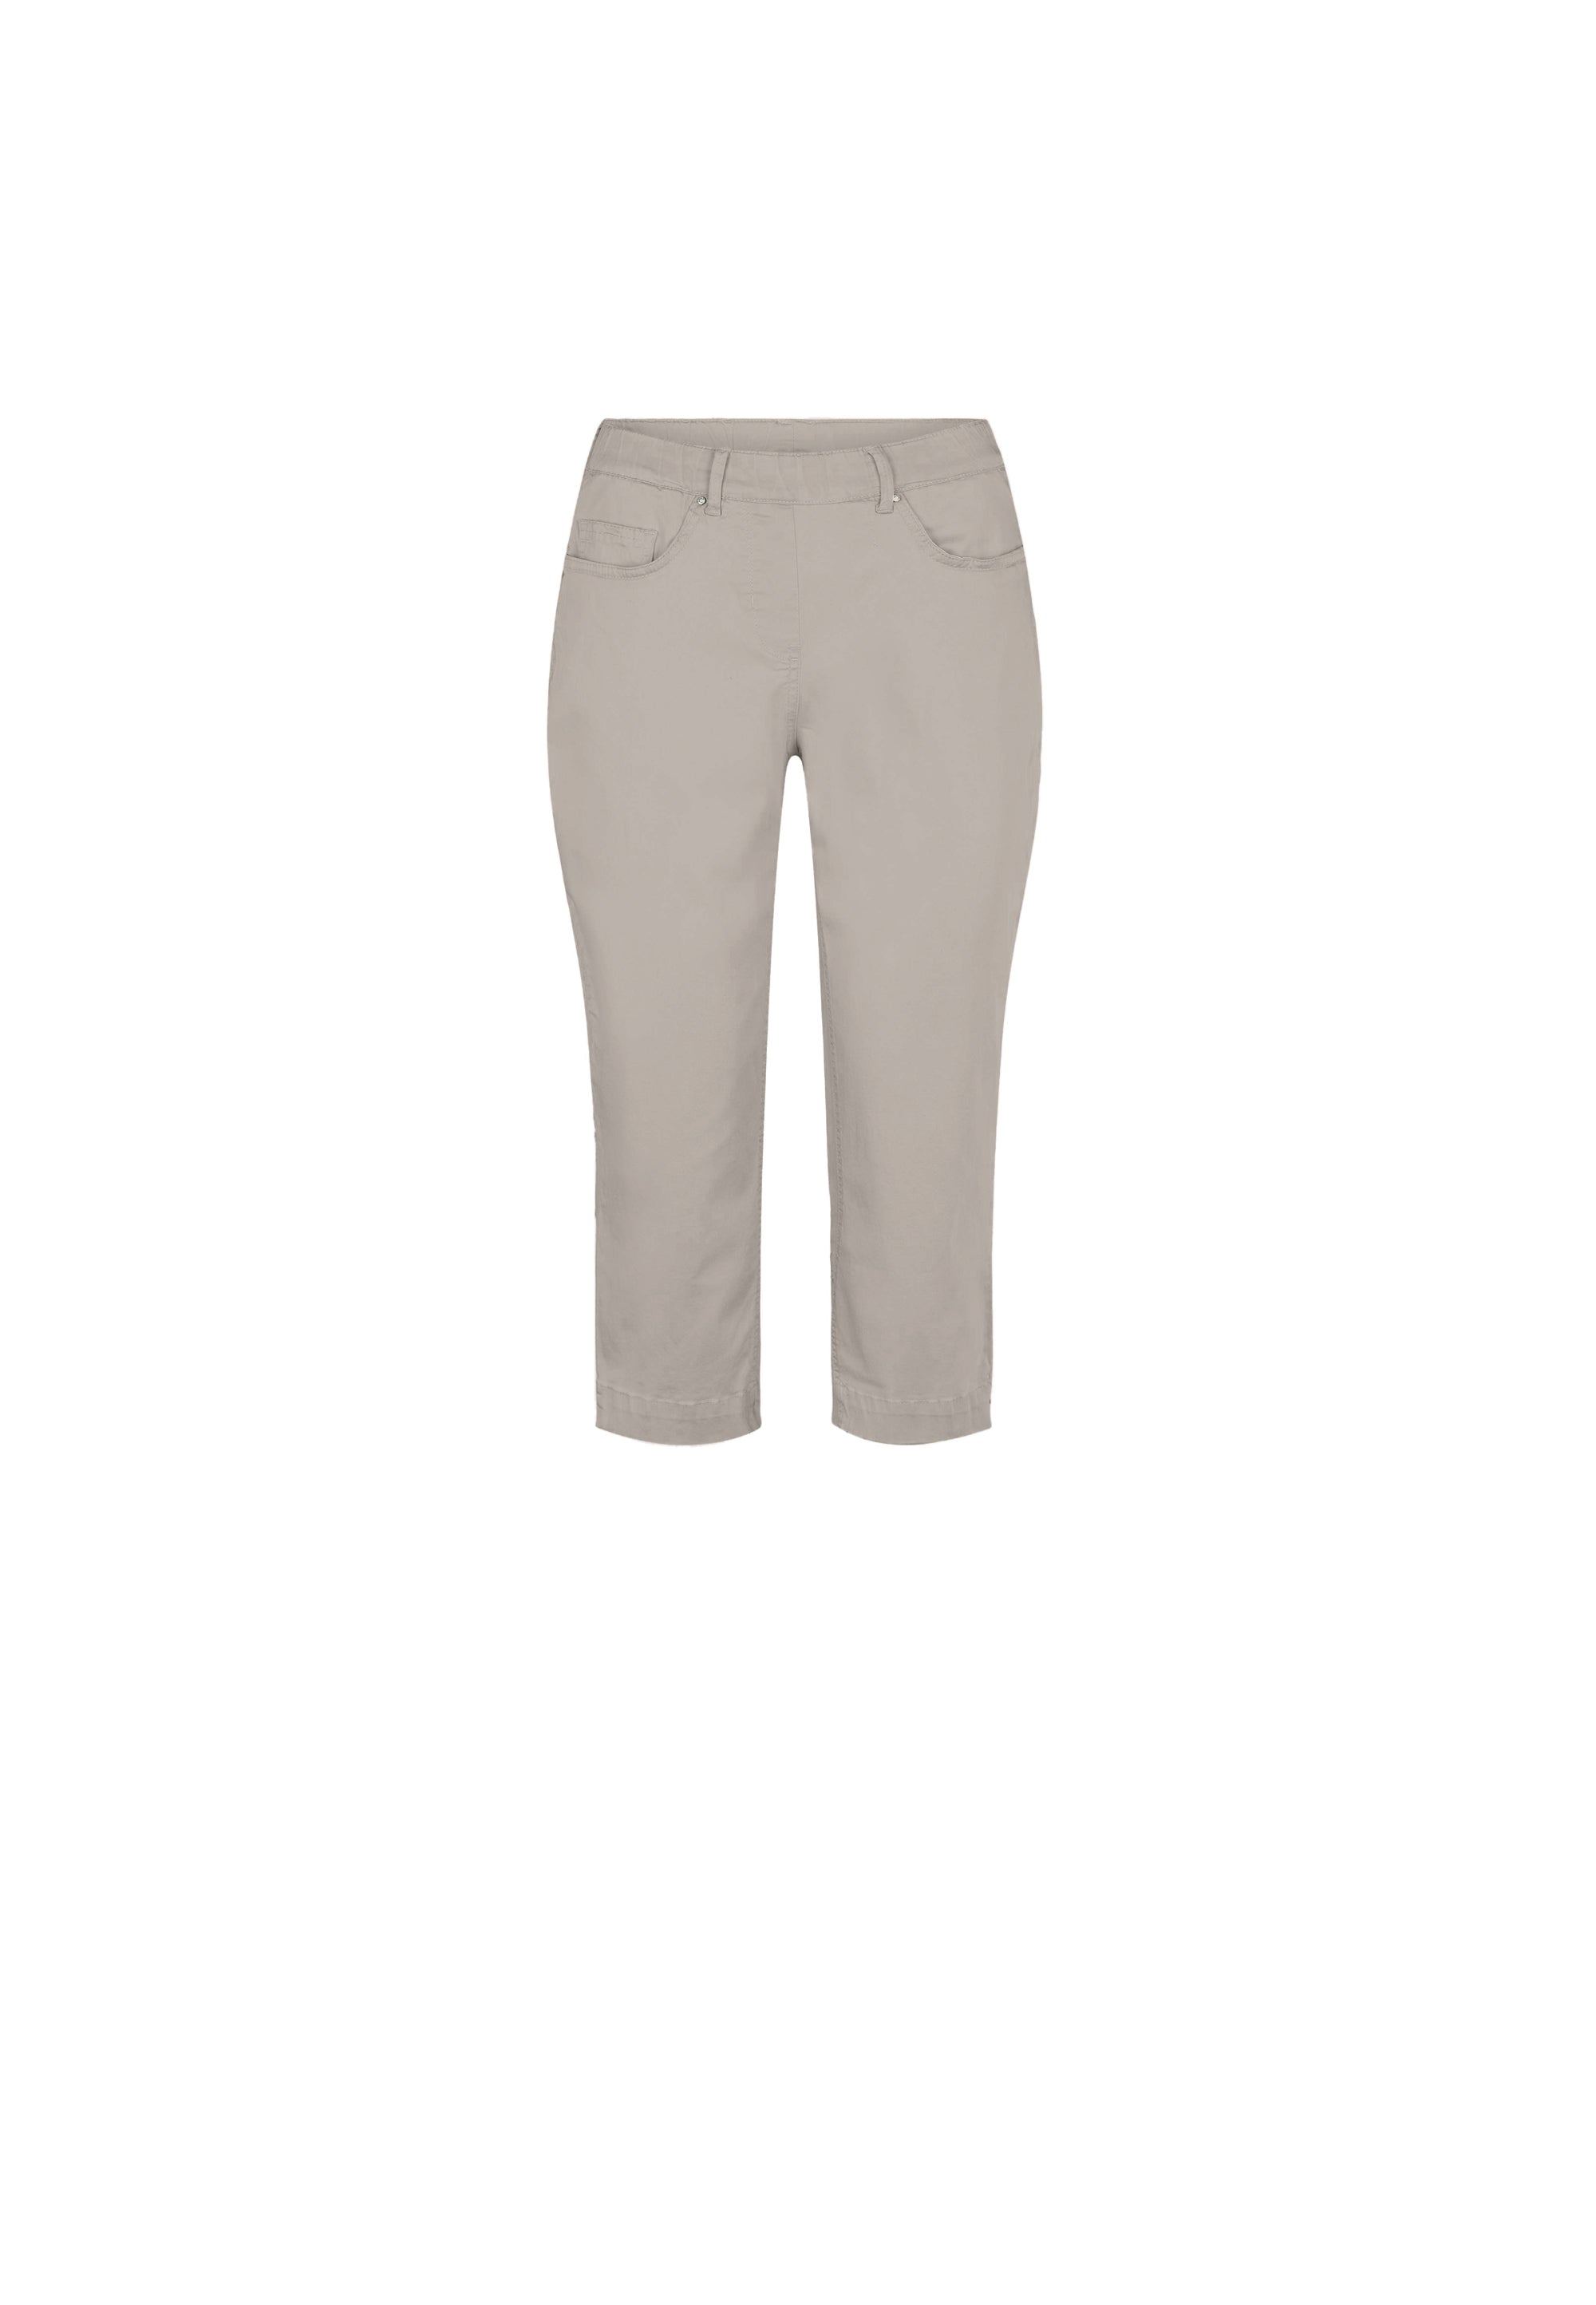 LAURIE  Hannah Regular Capri Medium Length Trousers REGULAR 25102 Grey Sand